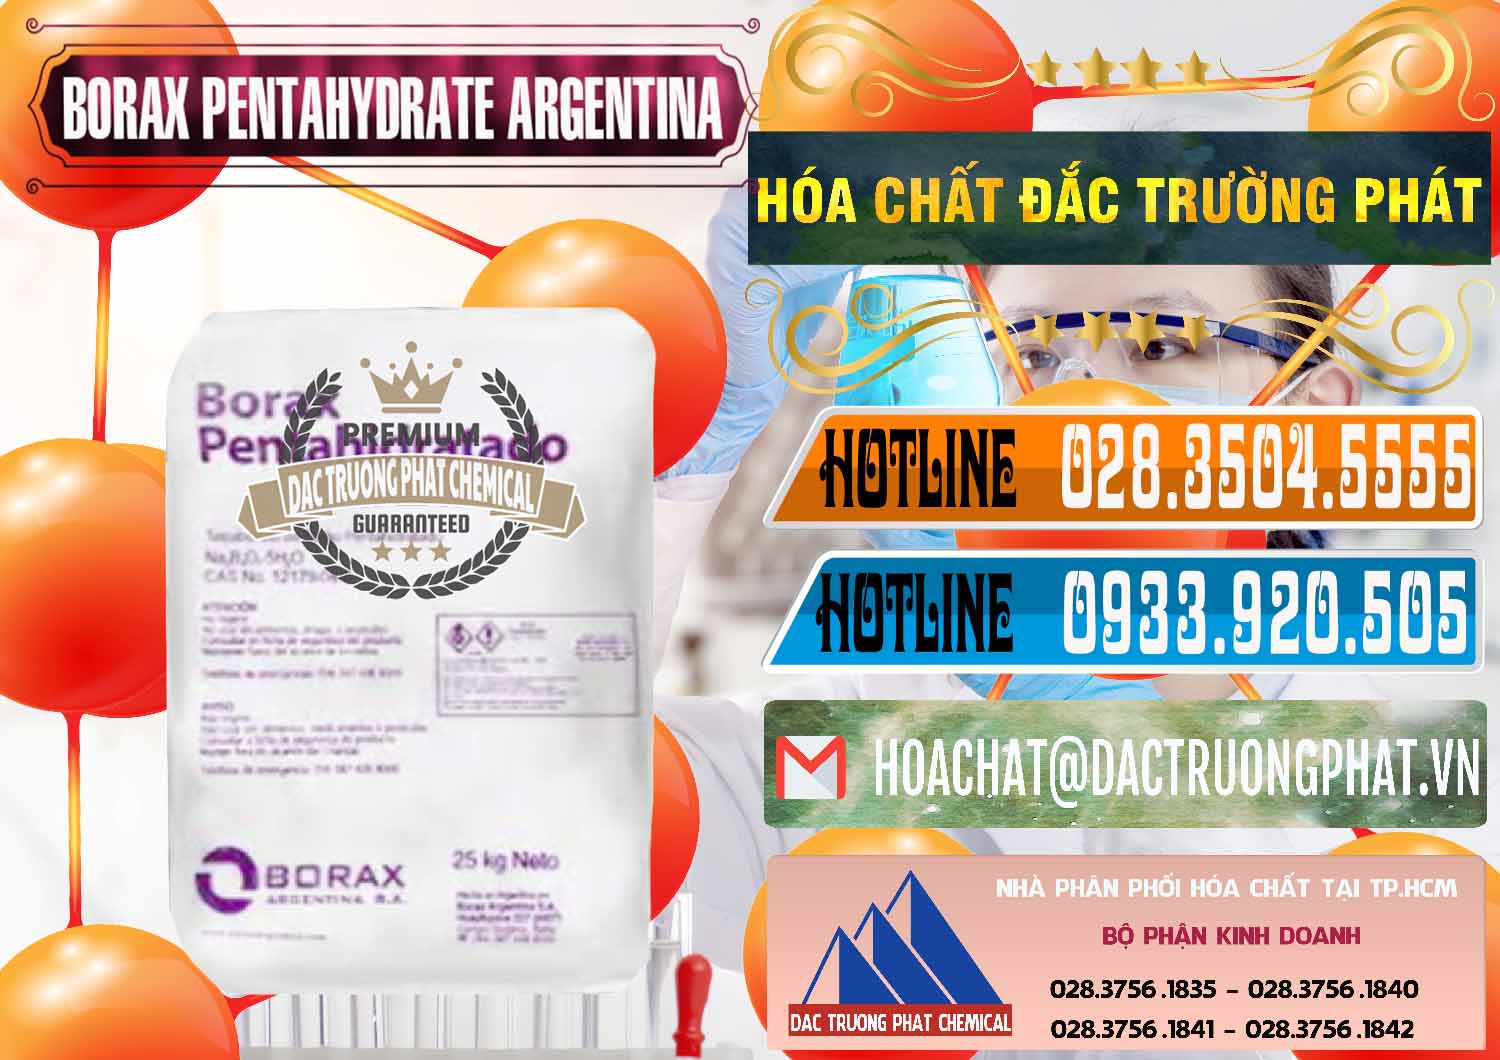 Nhà nhập khẩu & bán Borax Pentahydrate Argentina - 0447 - Cty chuyên nhập khẩu _ cung cấp hóa chất tại TP.HCM - stmp.net